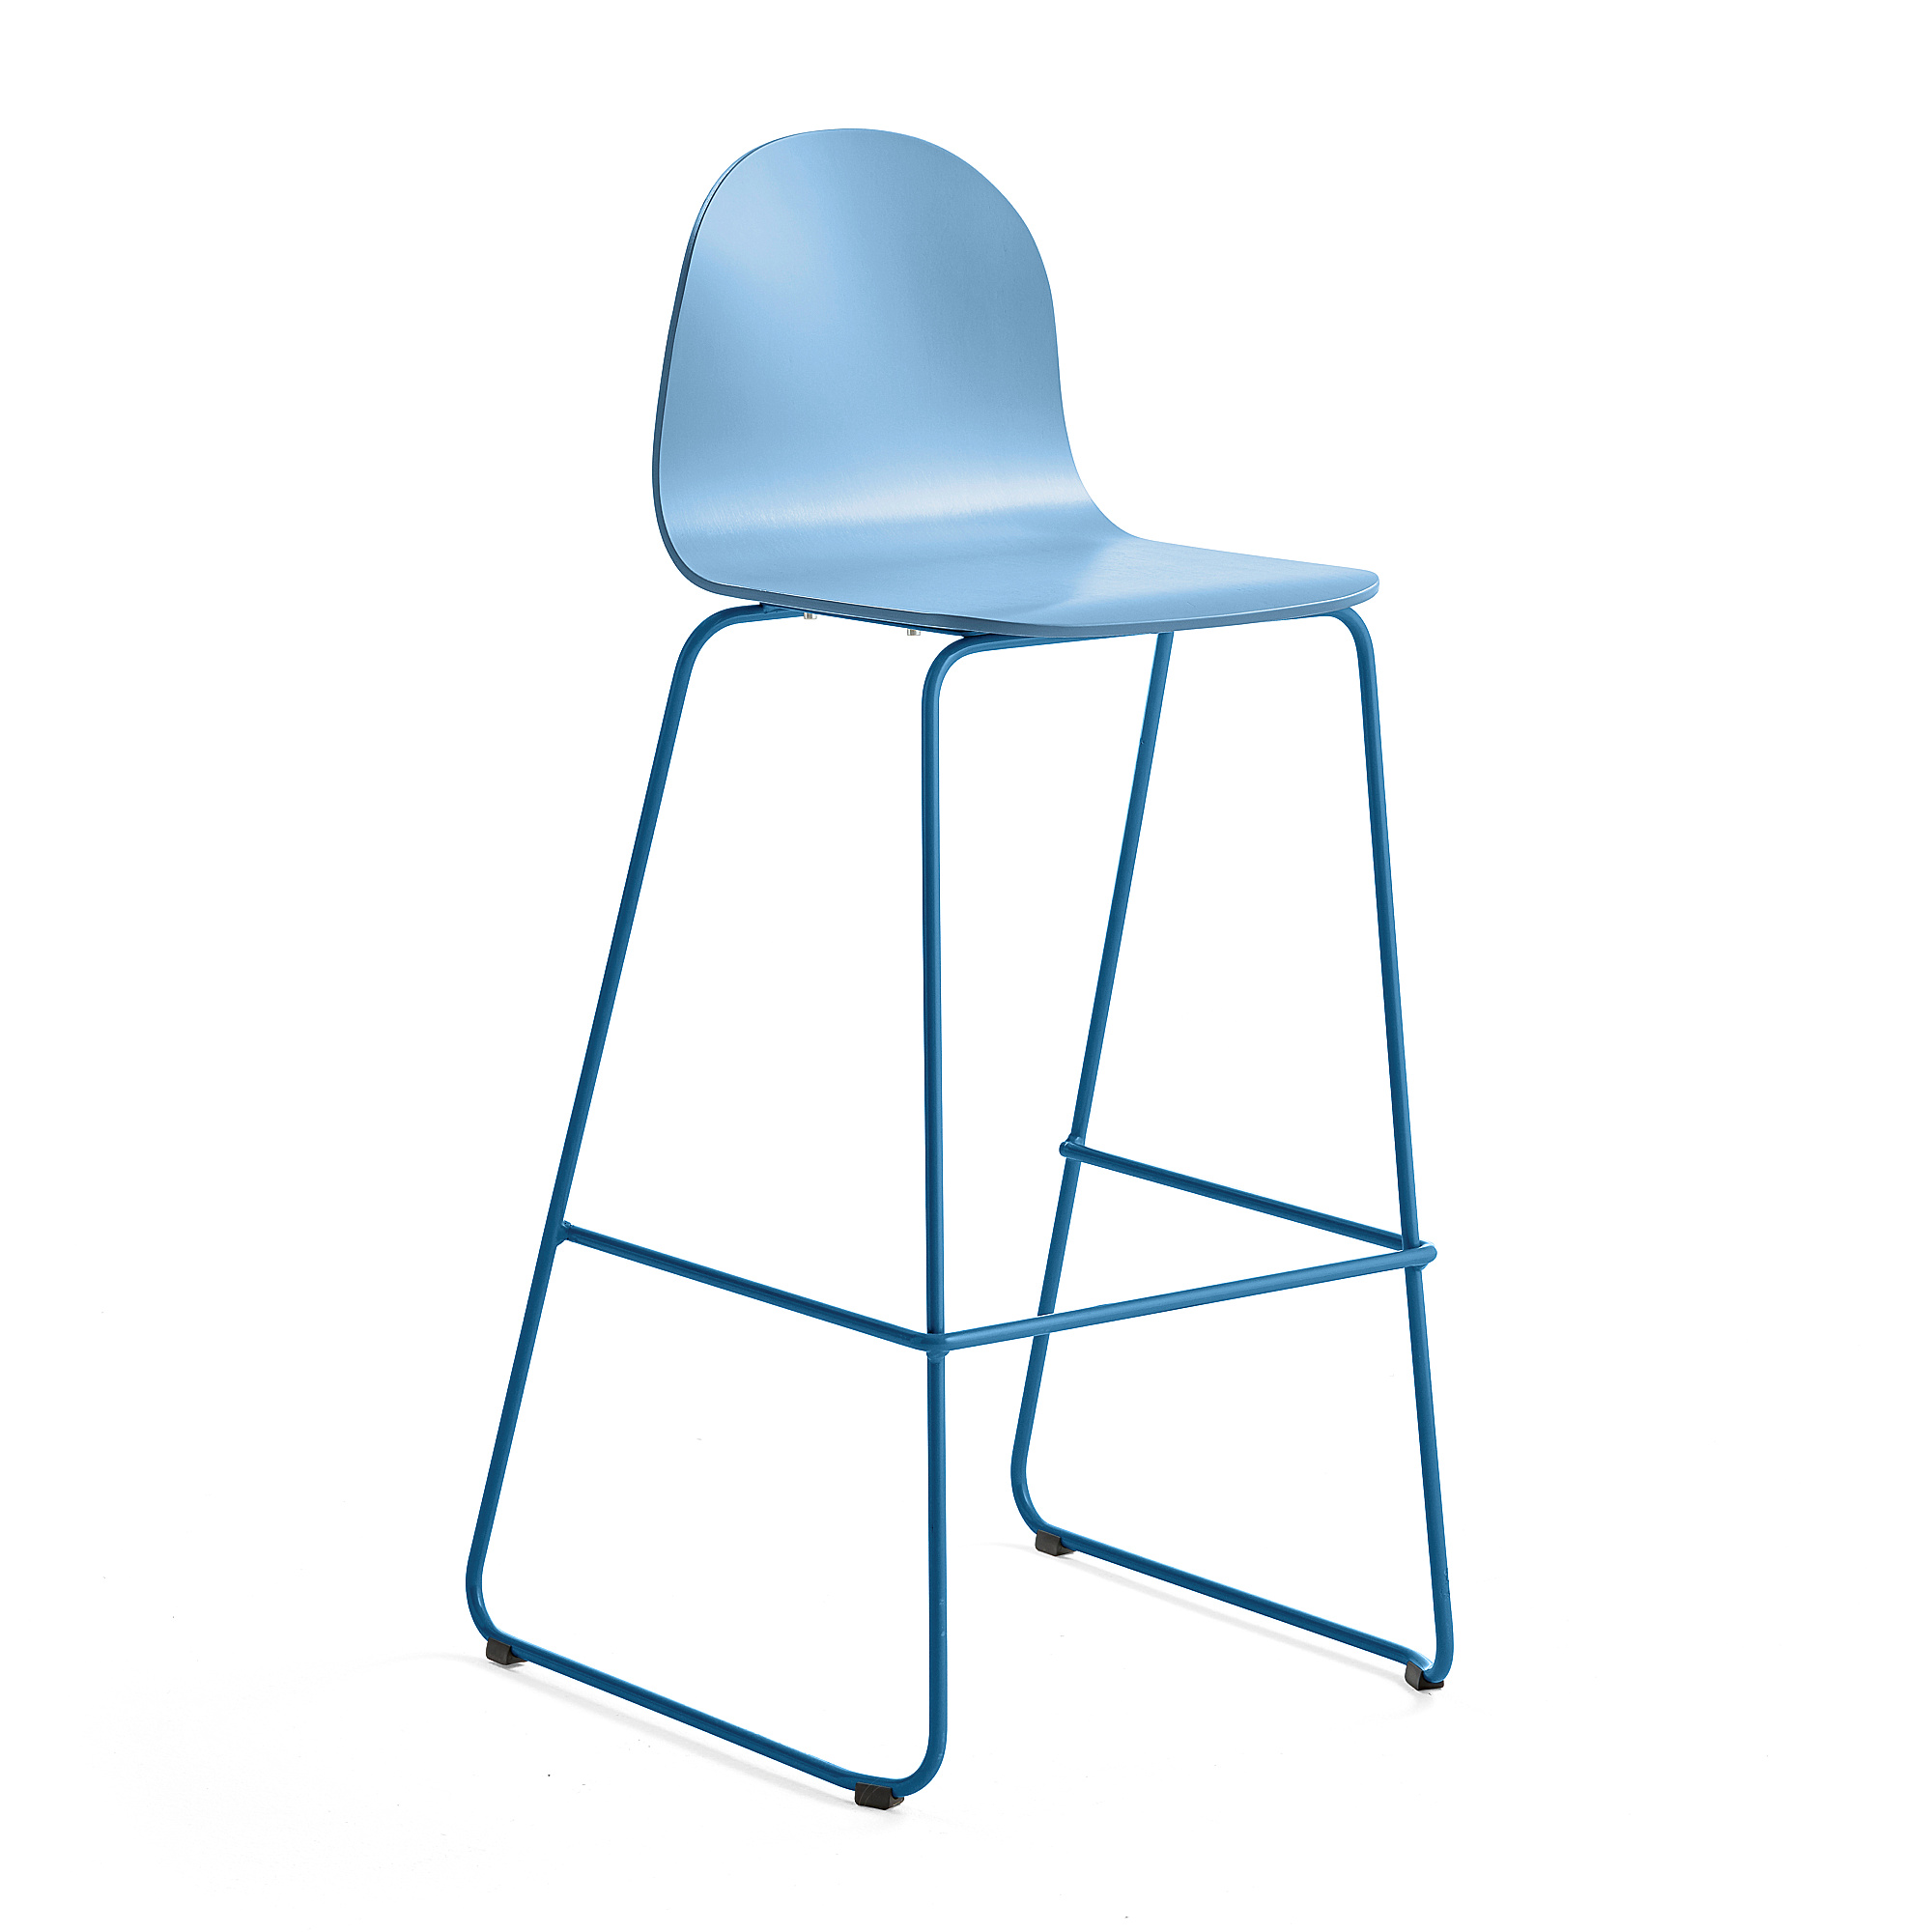 Barová židle GANDER, výška sedáku 790 mm, lakovaná skořepina, modrá